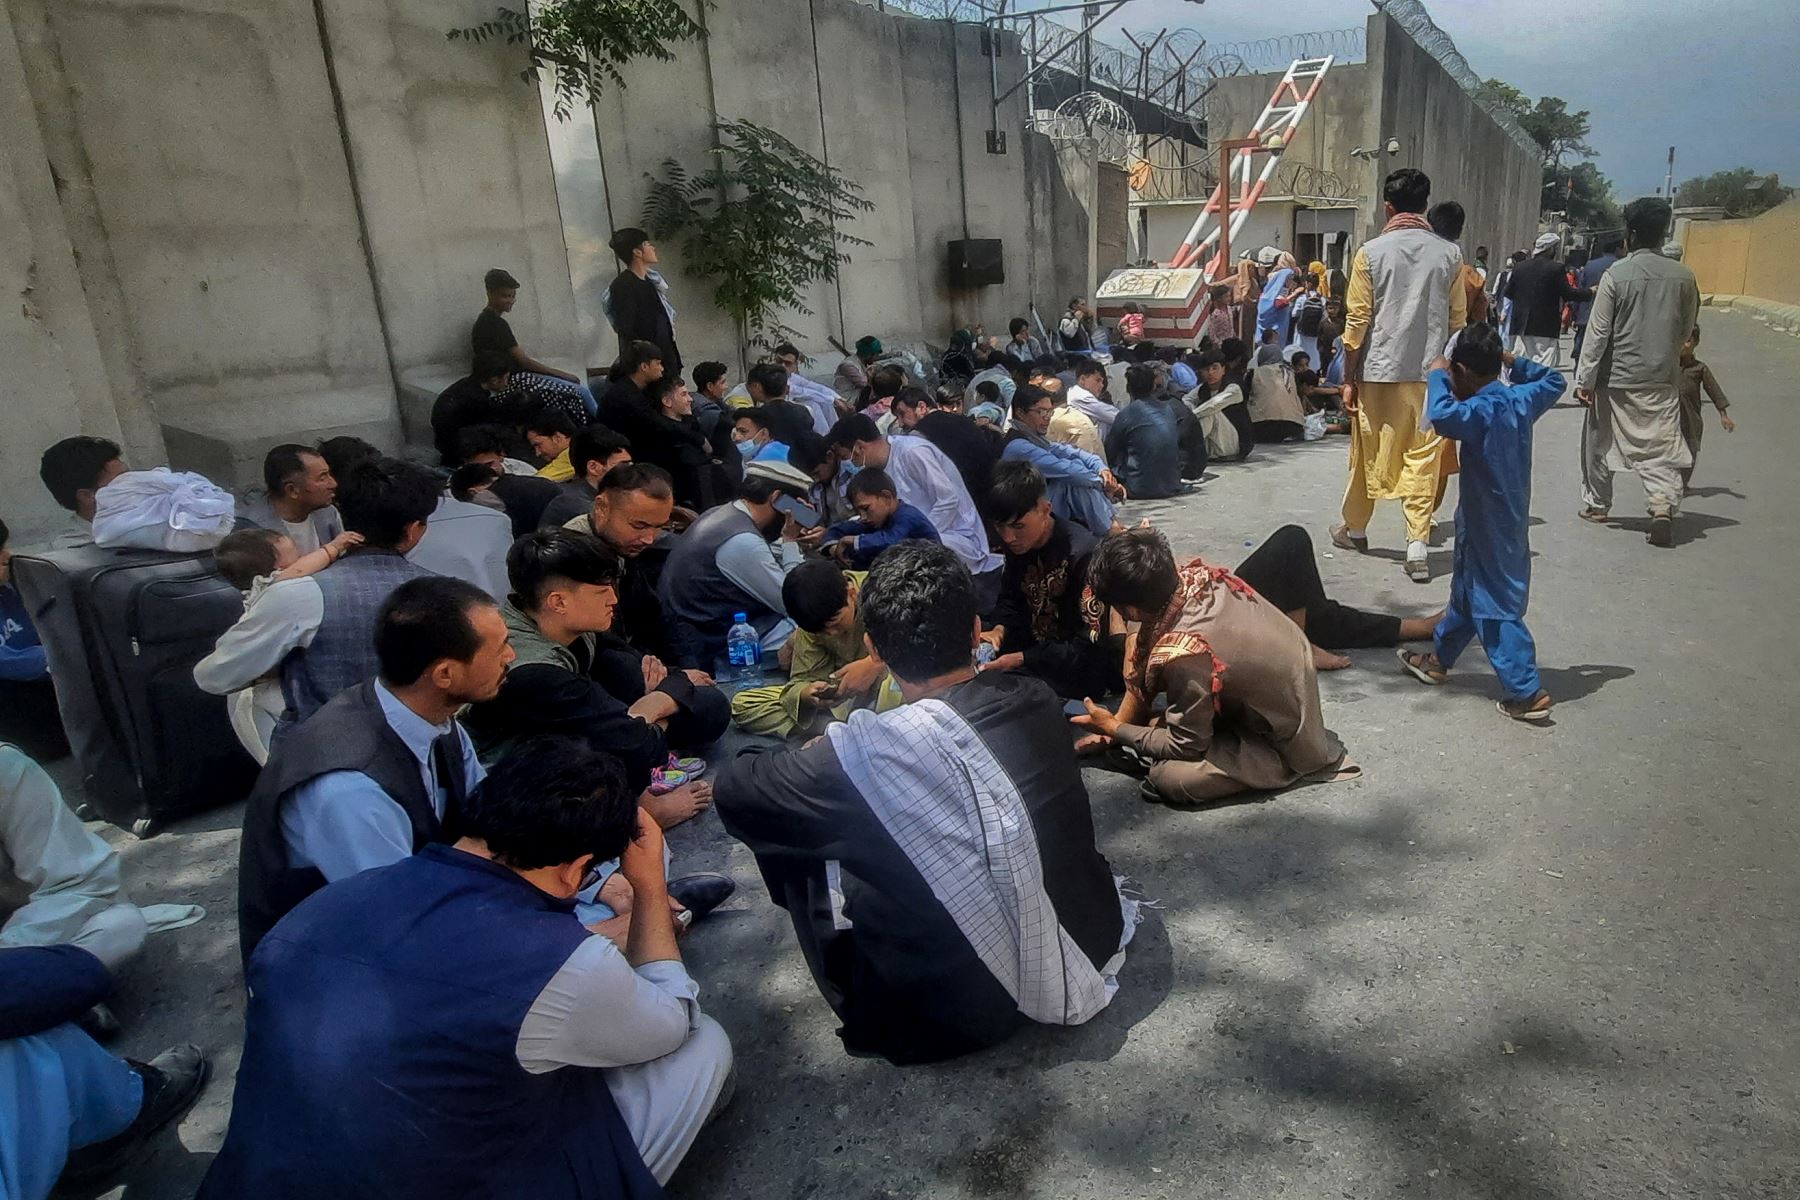 Los afganos se sientan frente a la embajada francesa en Kabul esperando salir de Afganistán. 

Foto: AFP